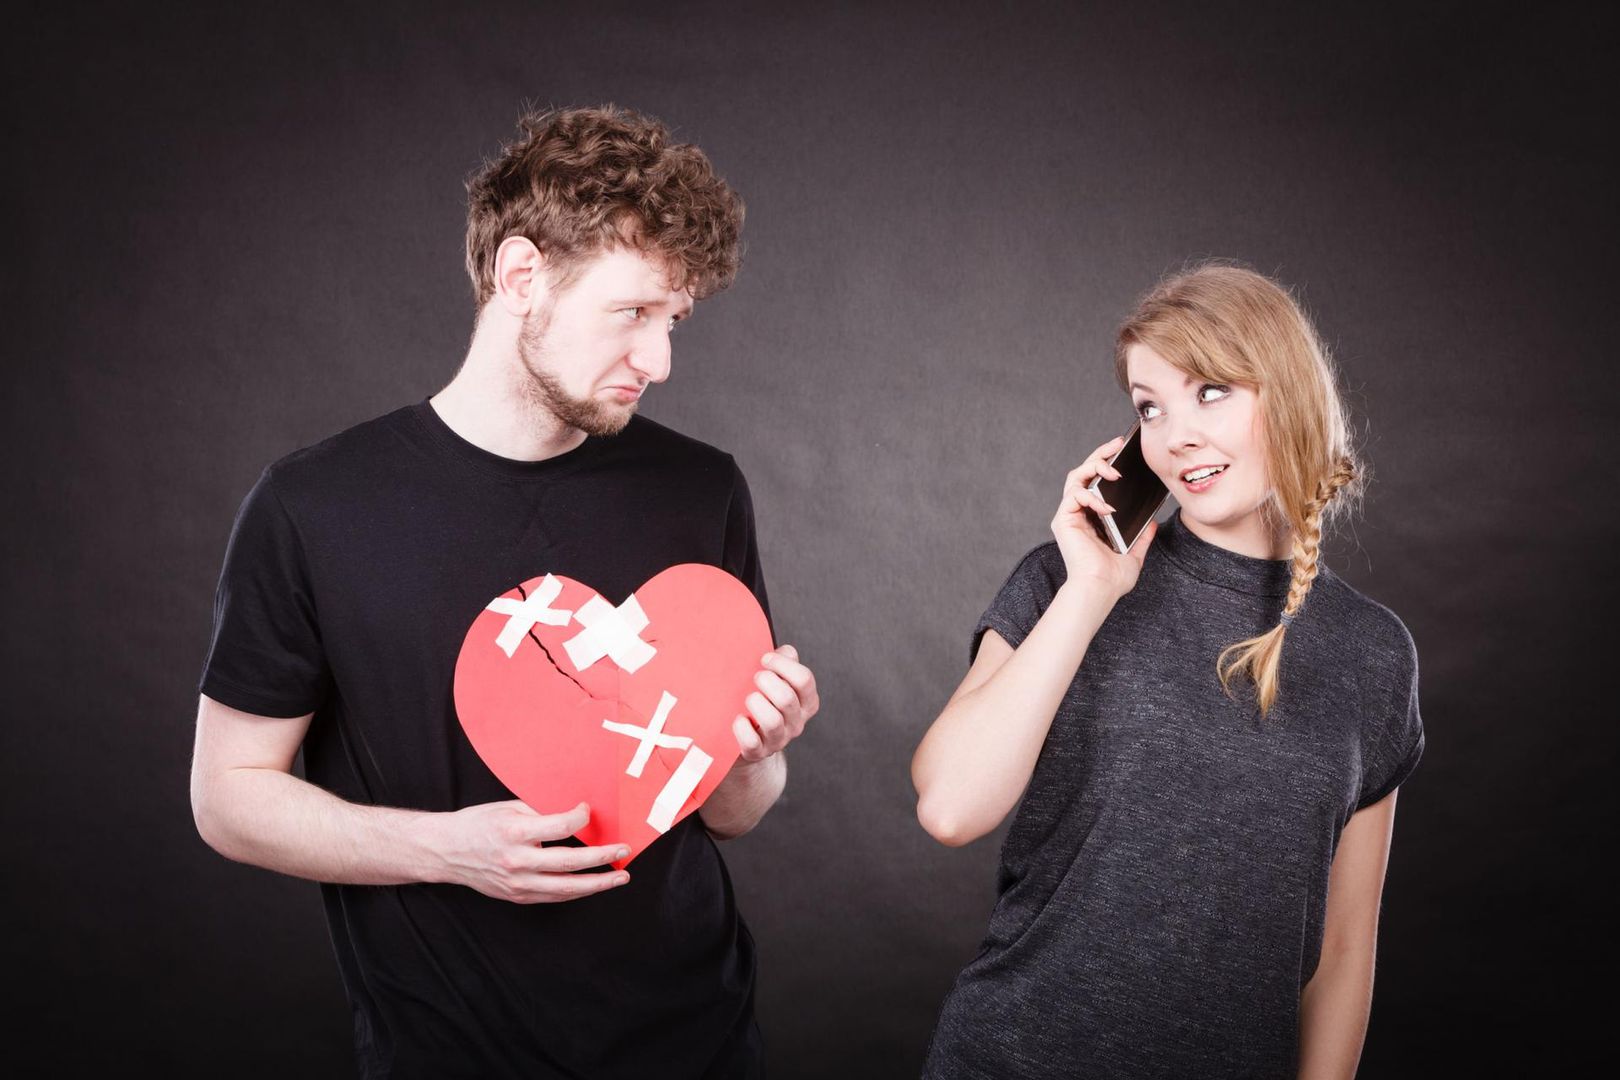 randki online, powodując wzrost liczby rozwodów